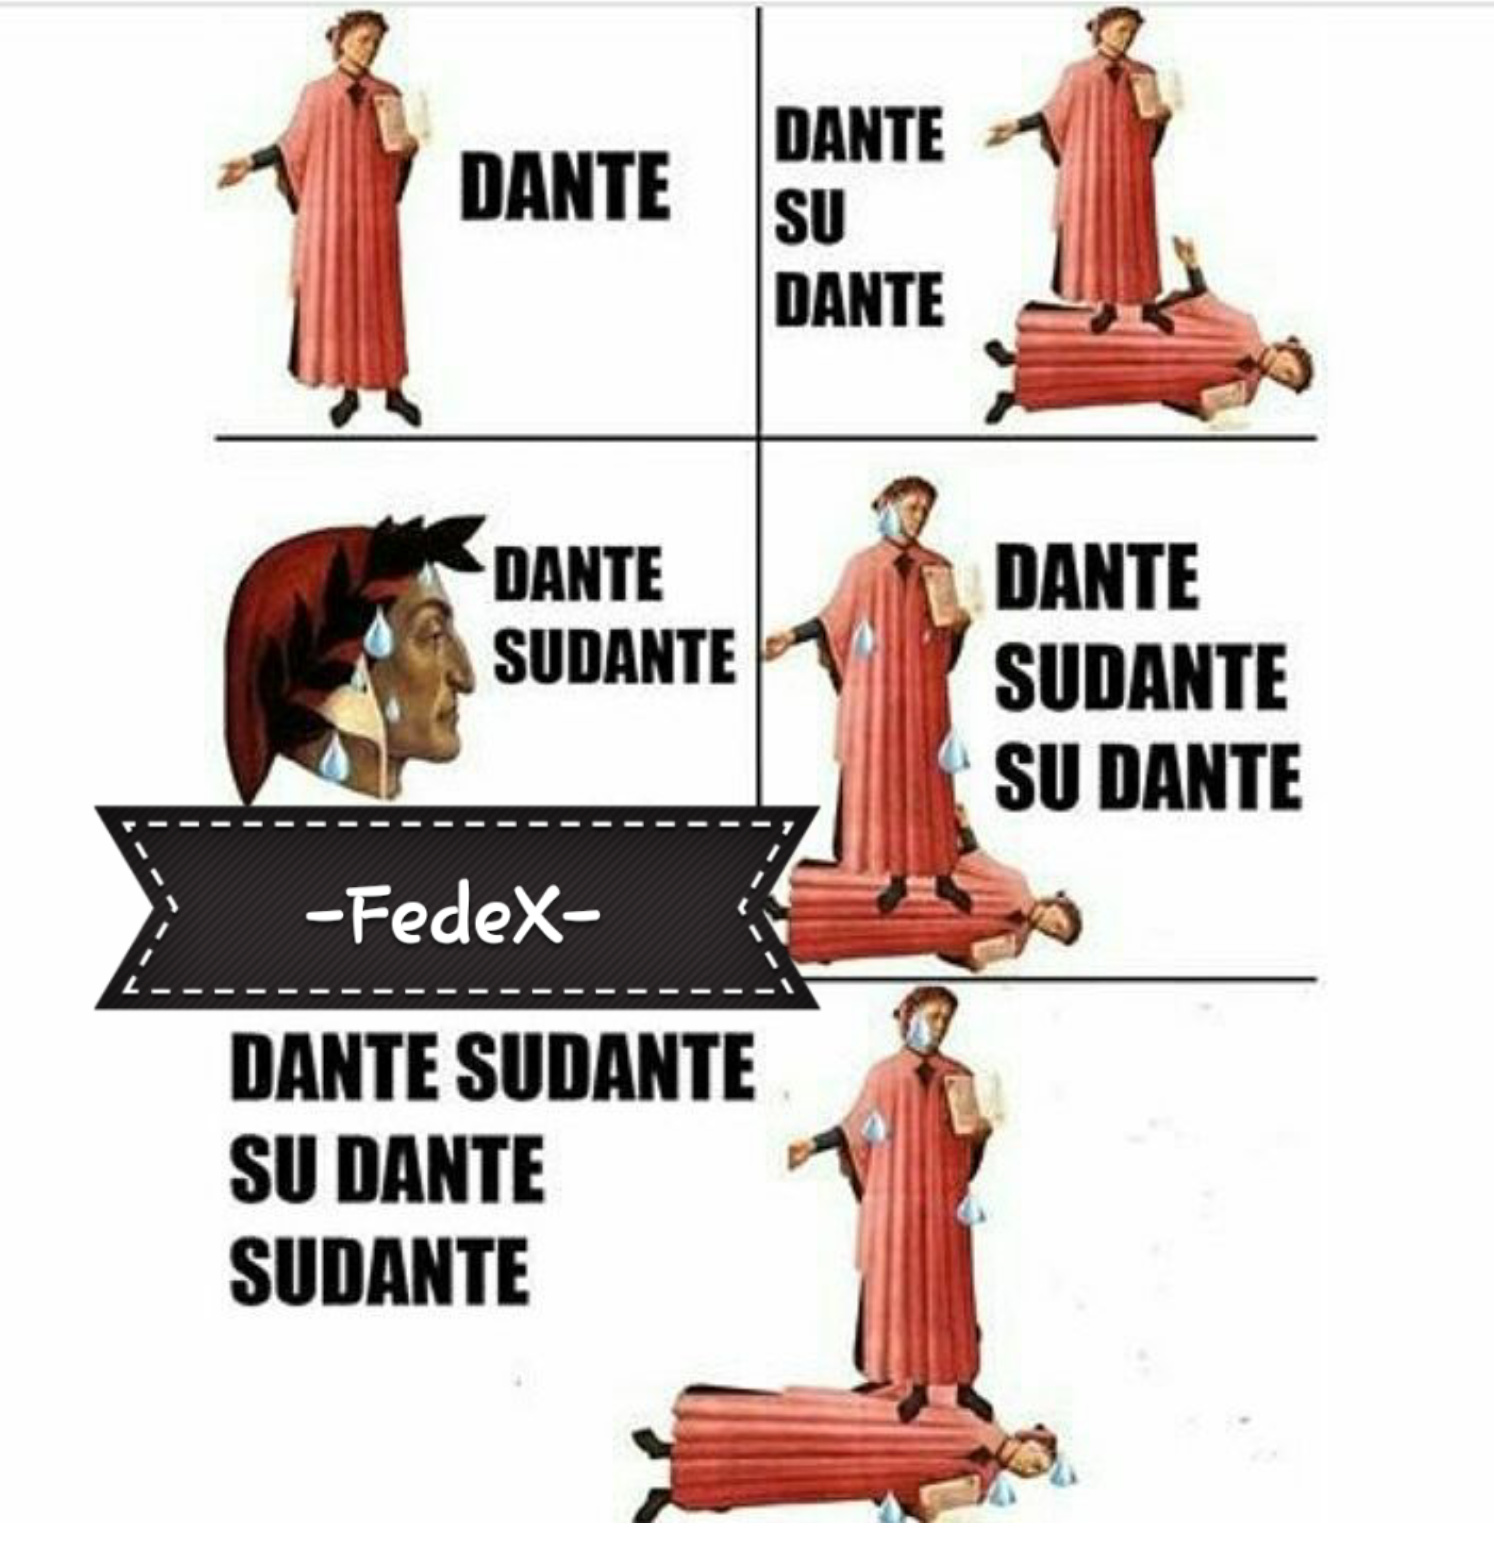 Dante sudante su Dante sudante che cavalca Dante sudante sopra Dante sudante - meme